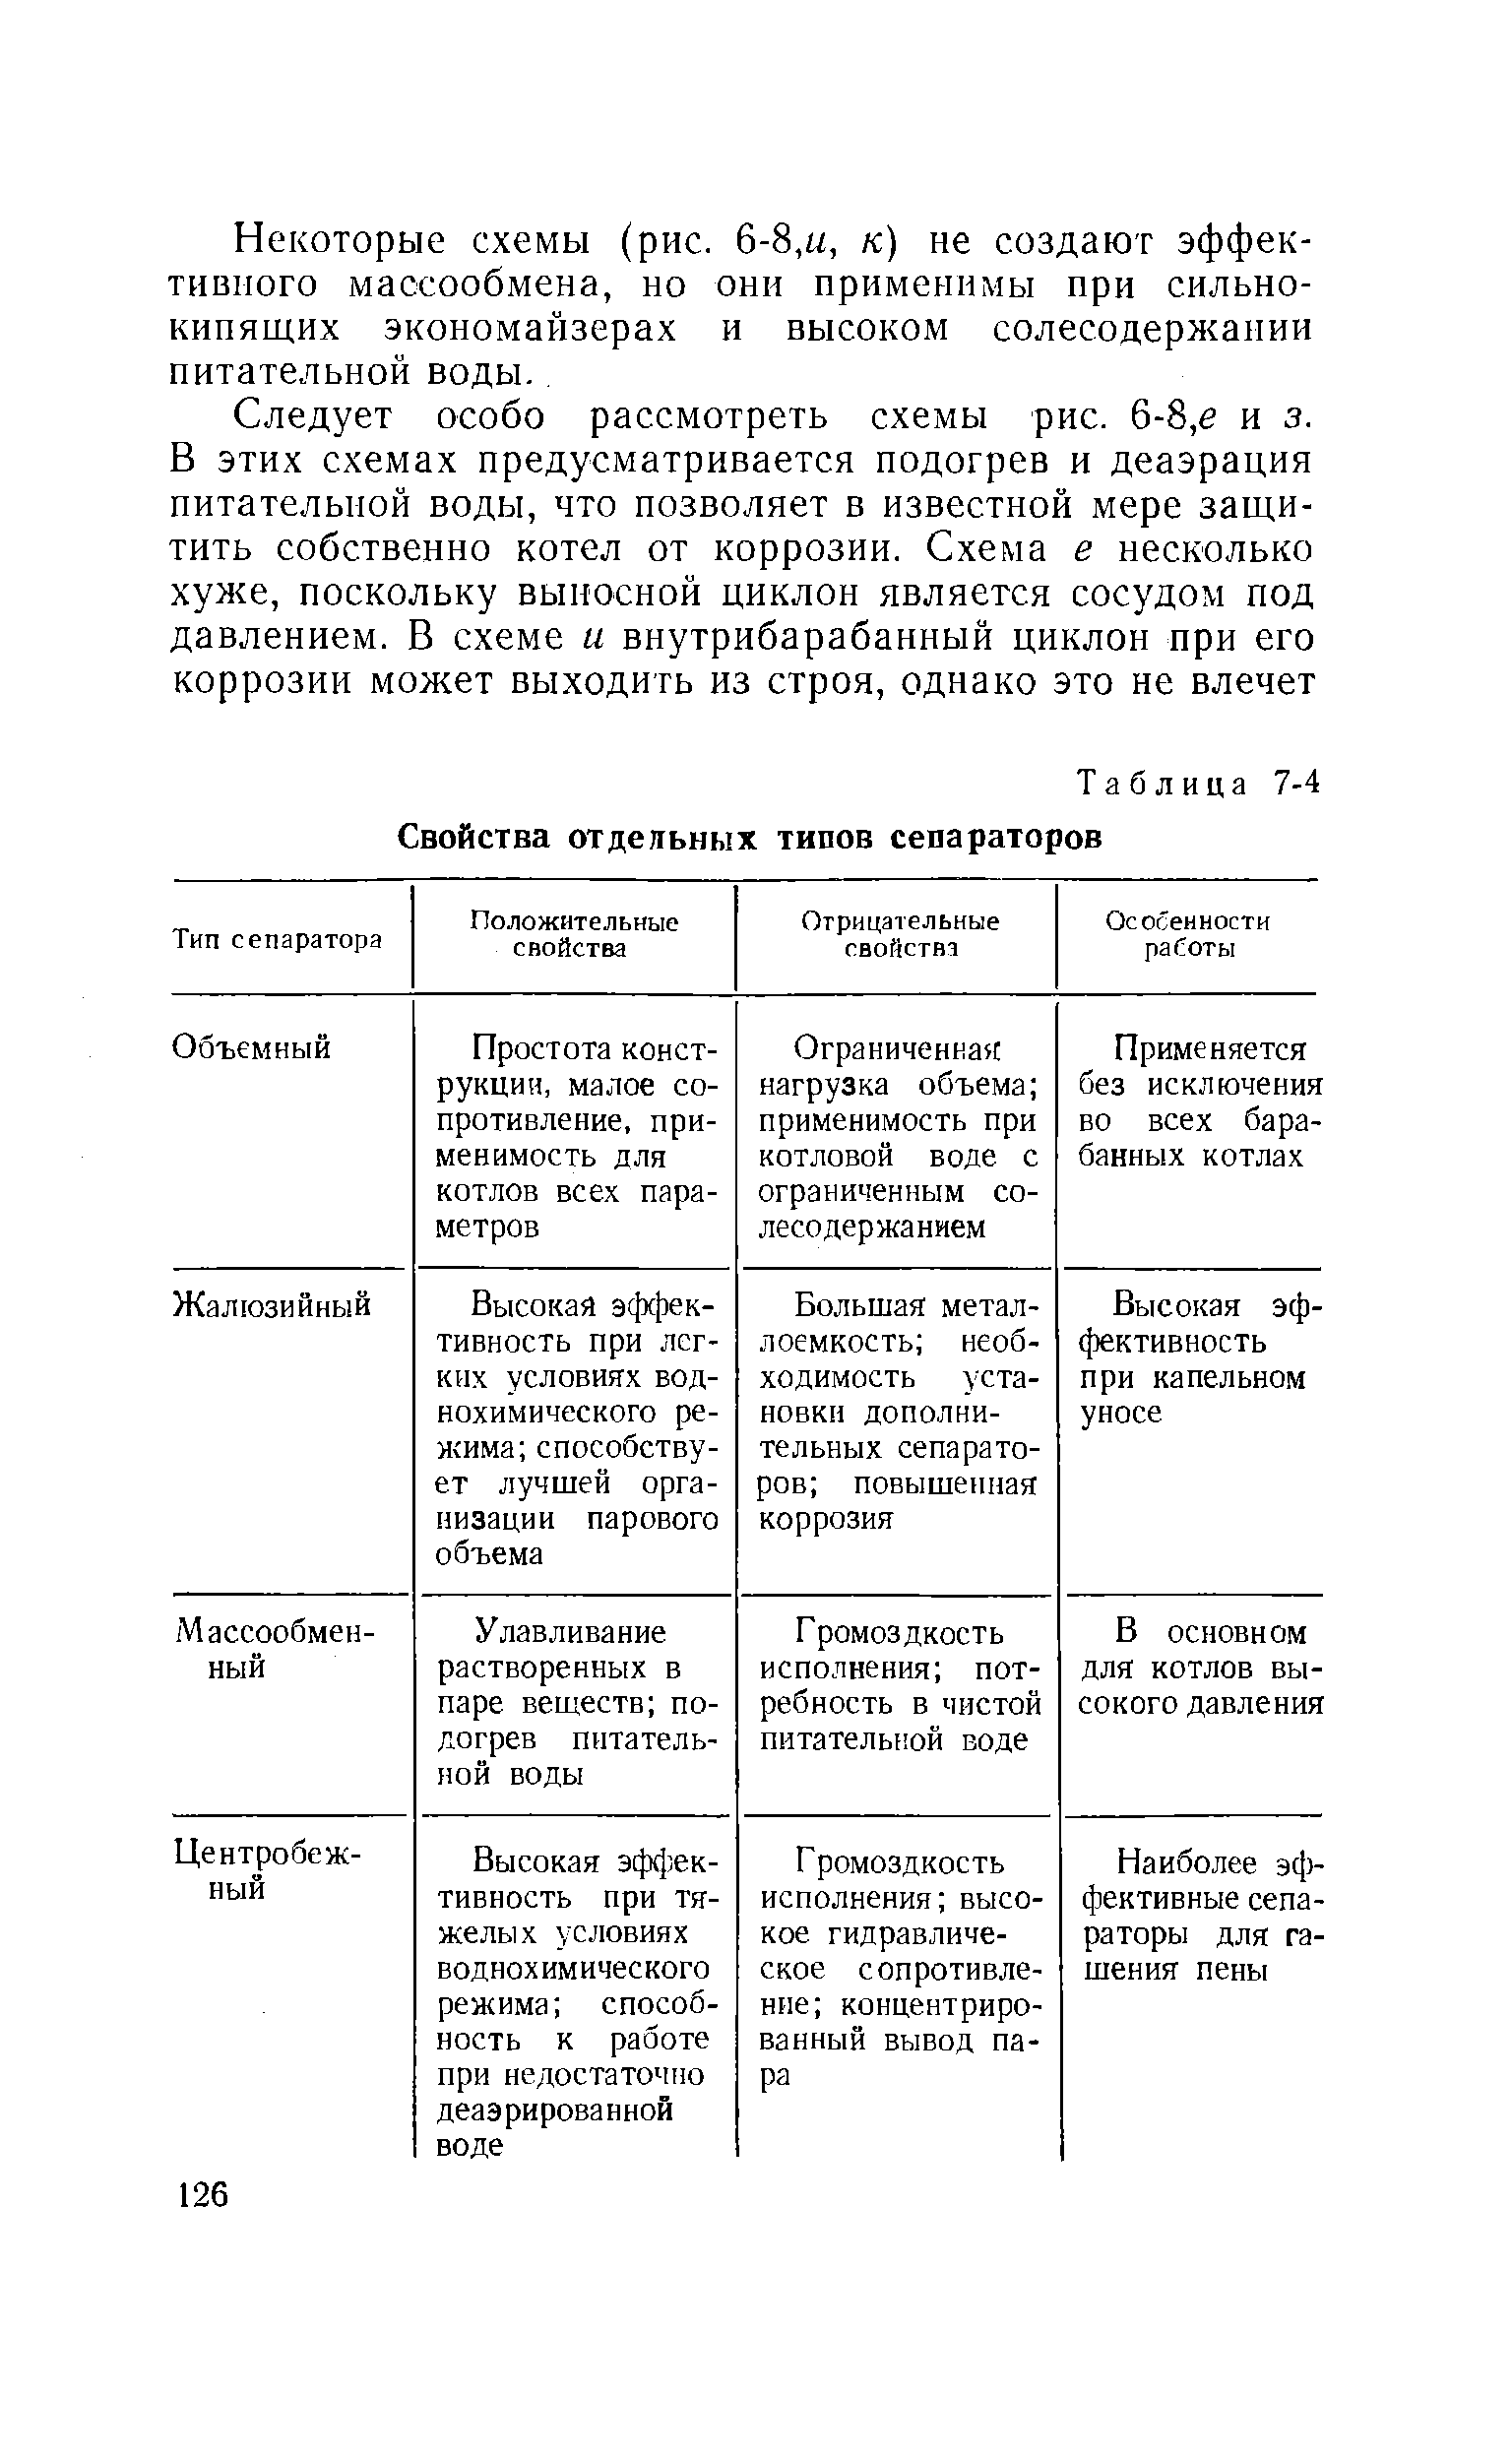 Таблица 7-4 Свойства отдельных типов сепараторов
